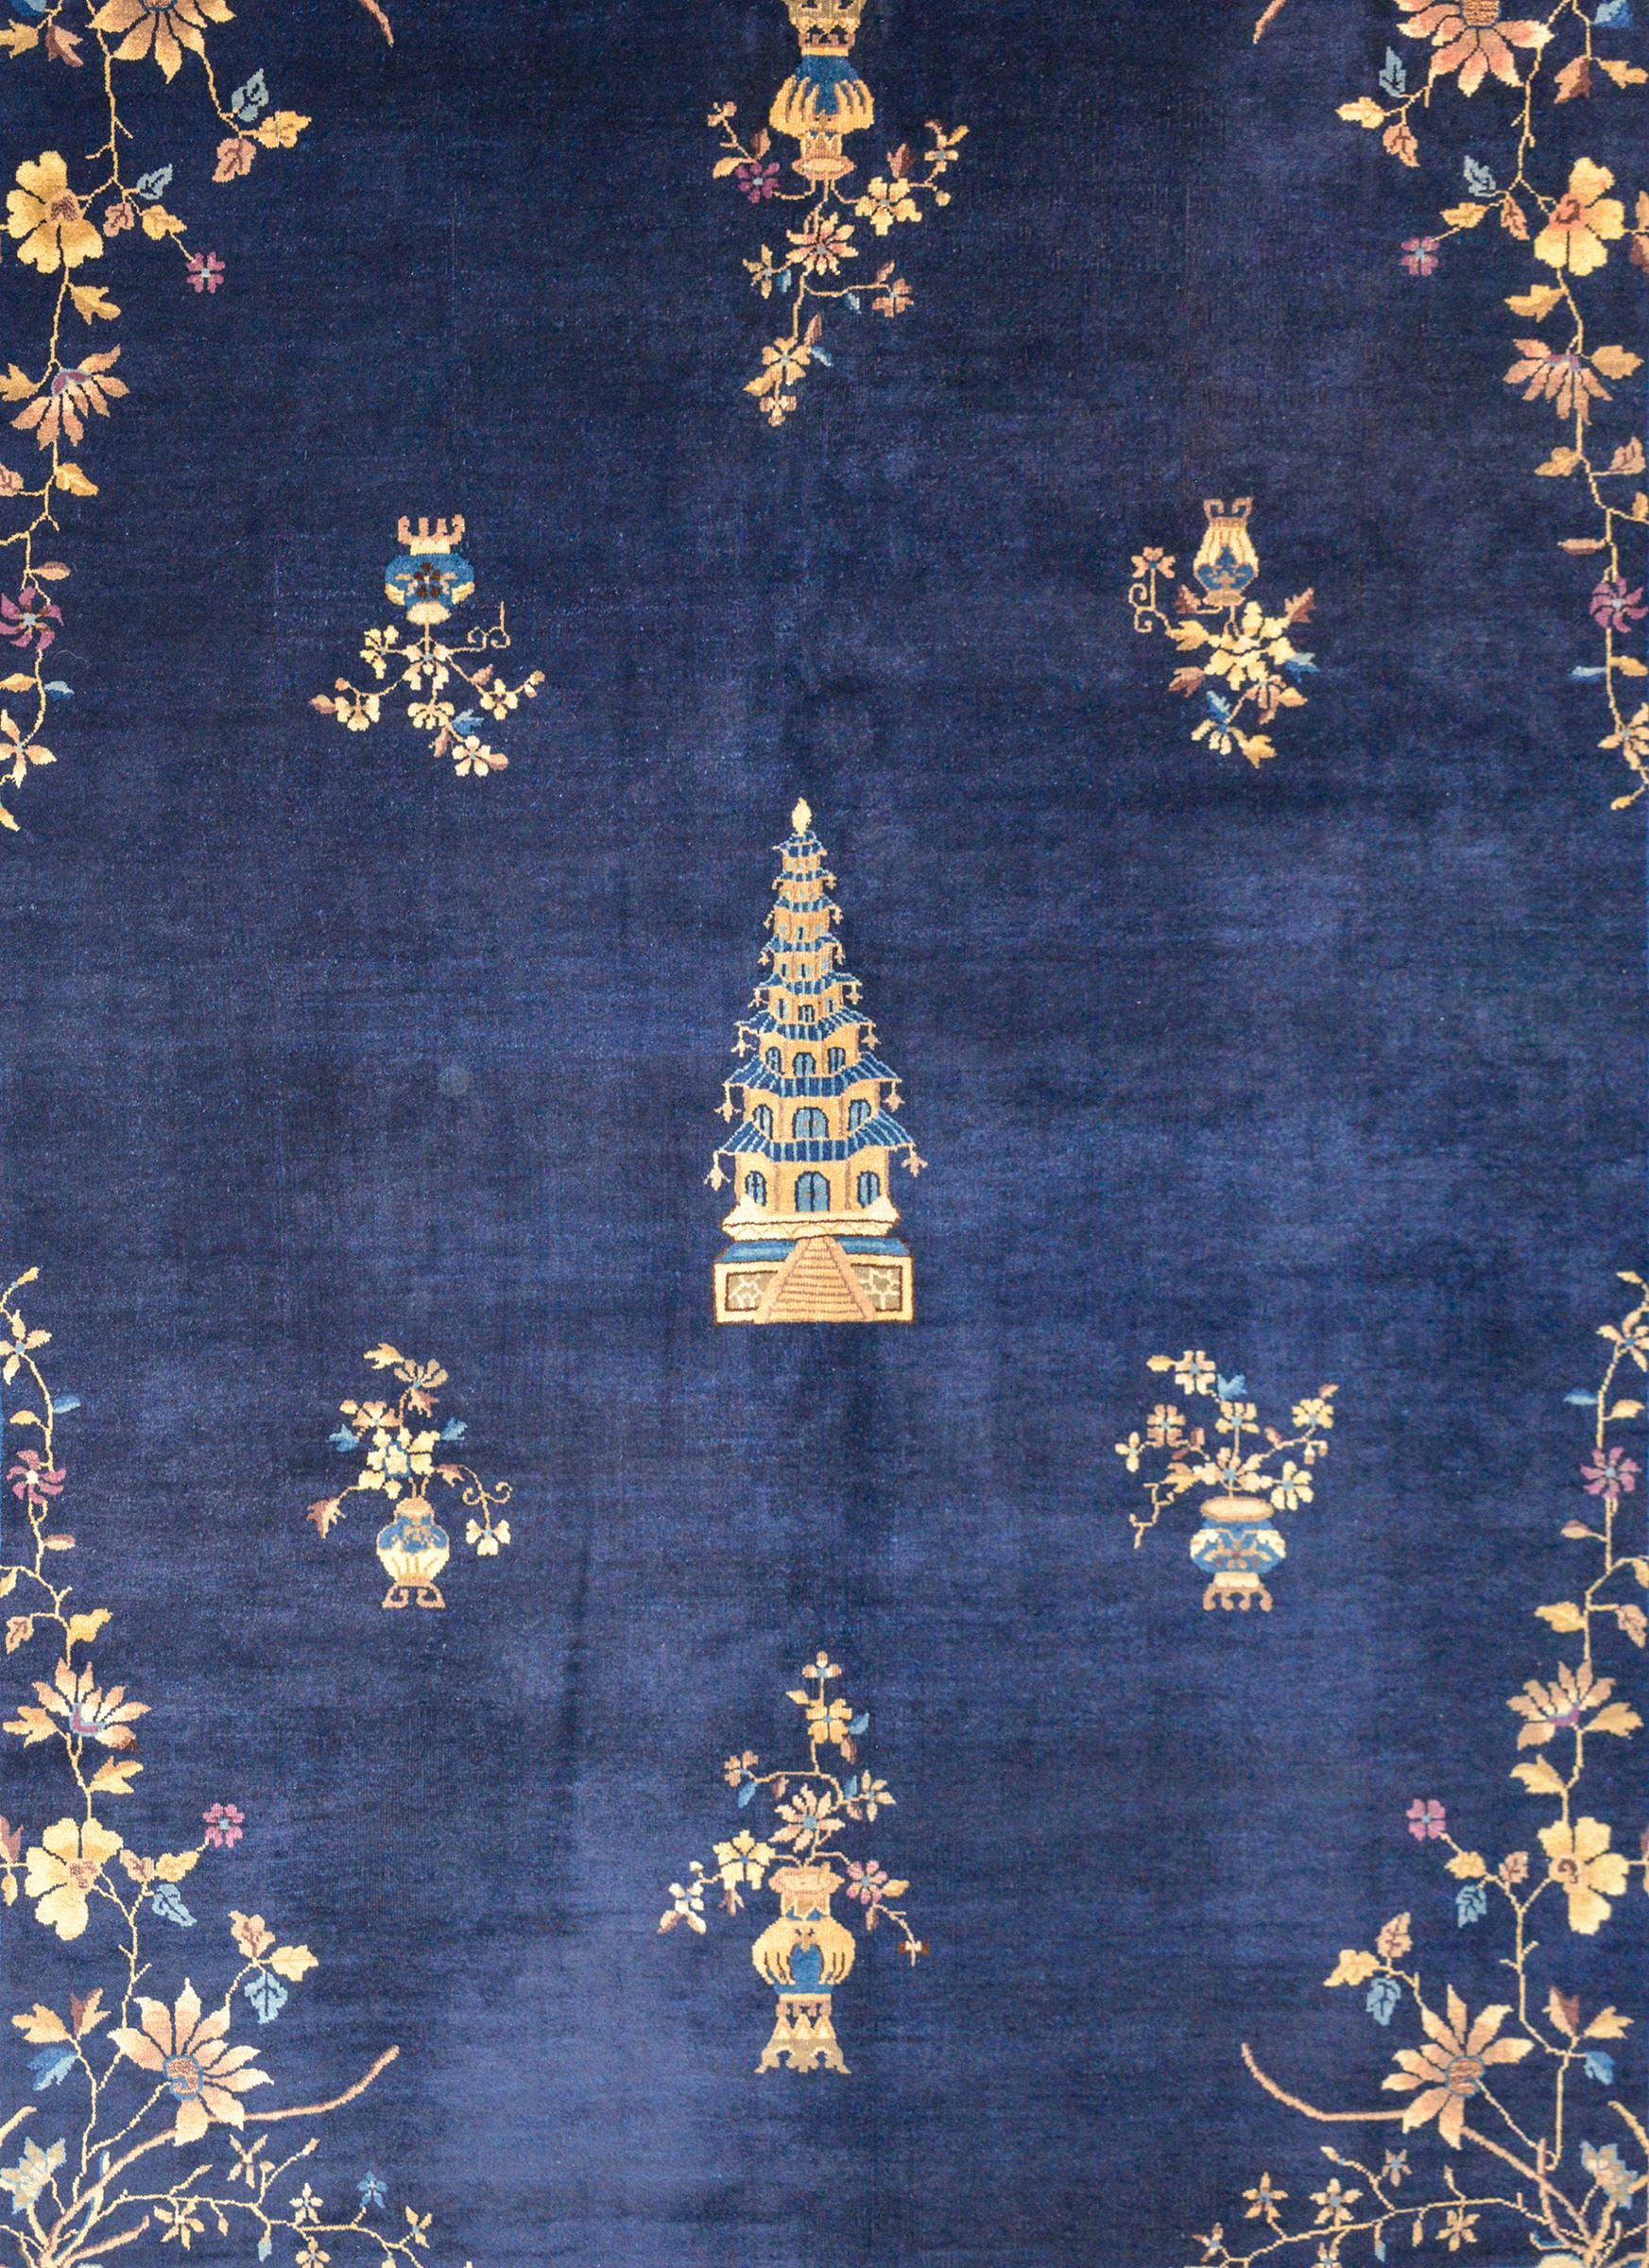 Ein hervorragender chinesischer Art-Déco-Teppich des frühen 20. Jahrhunderts mit einer großen Pagode in der Mitte inmitten eines Feldes von Glück verheißenden Topfblumen, gewebt in Creme, Braun, hellem und dunklem Indigo auf einem dunklen Indigofeld